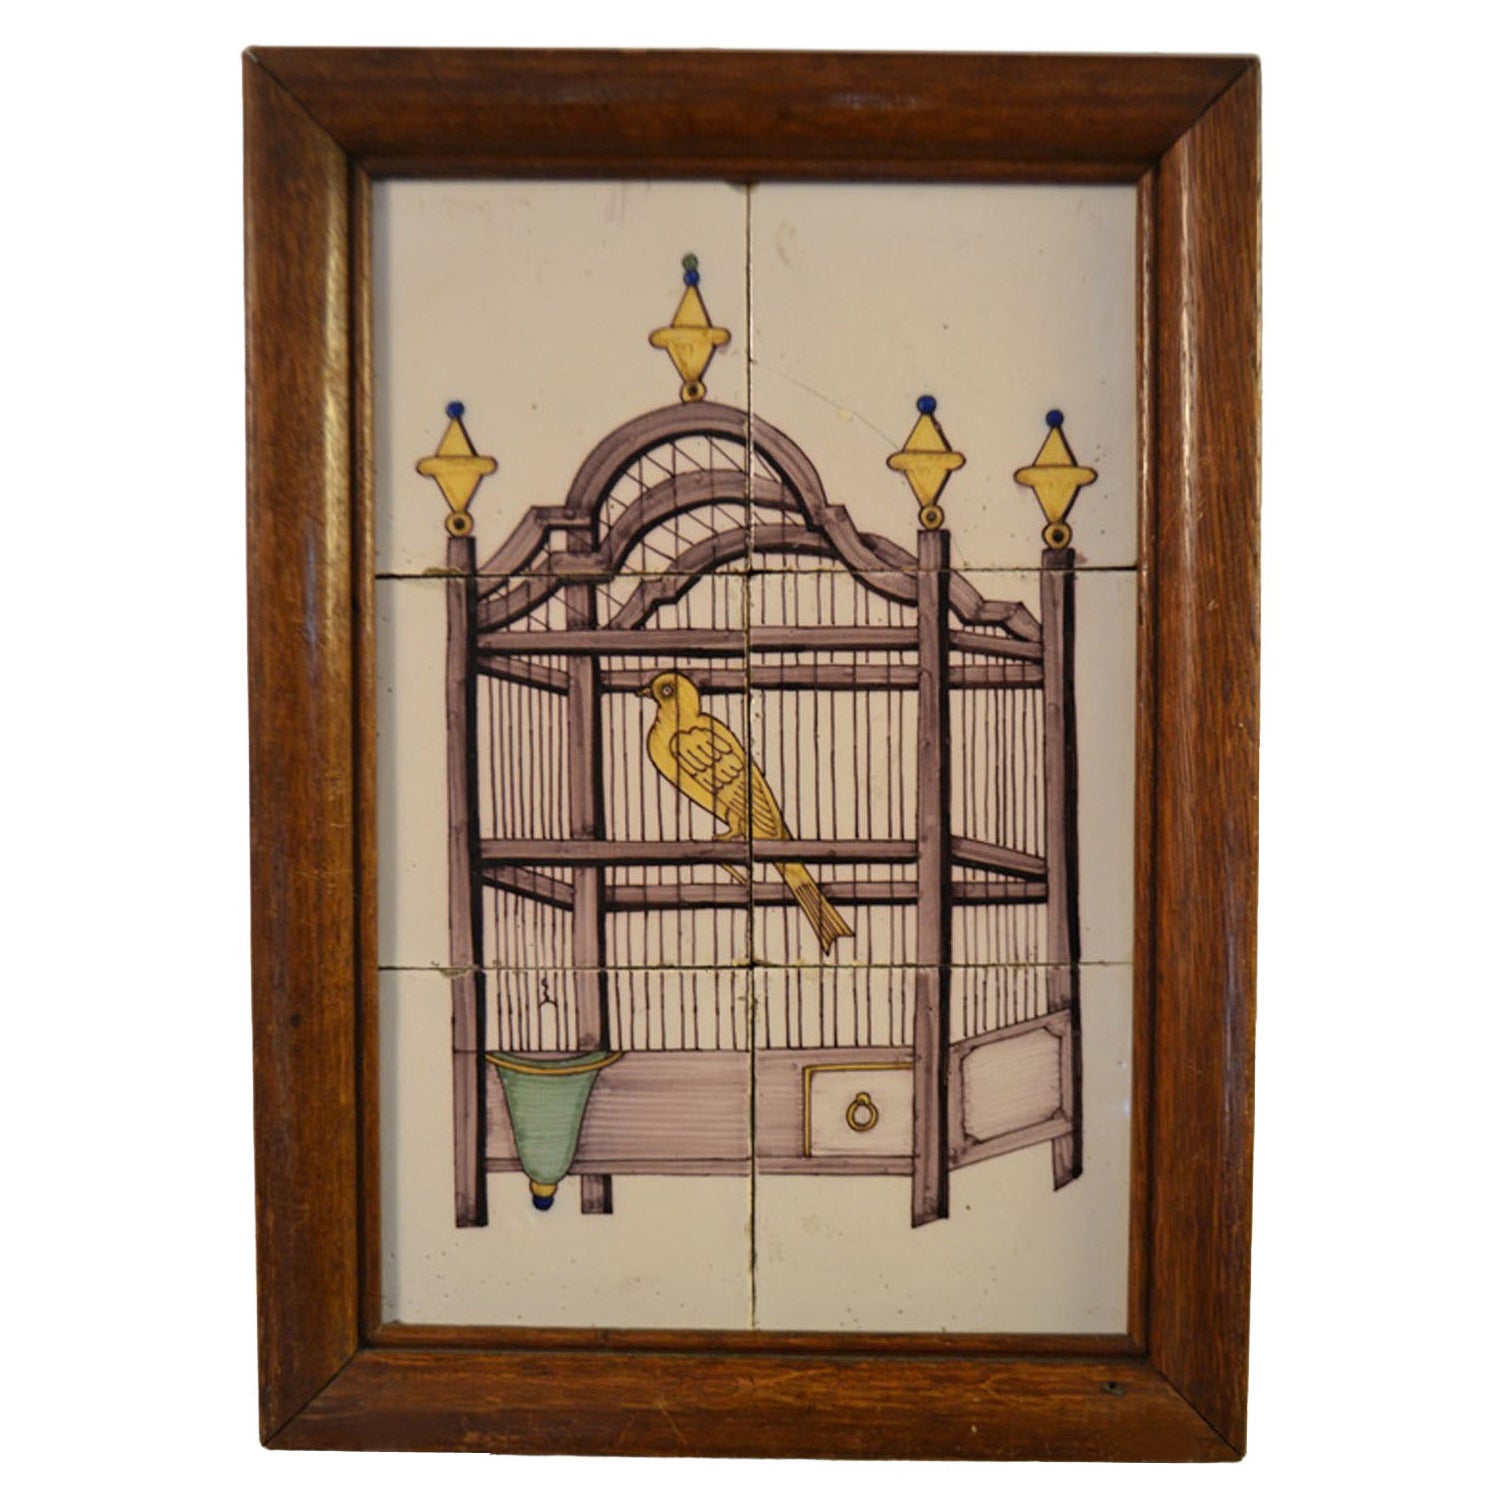 Panneau de carreaux de Delft du 18ème siècle représentant un oiseau dans une cage